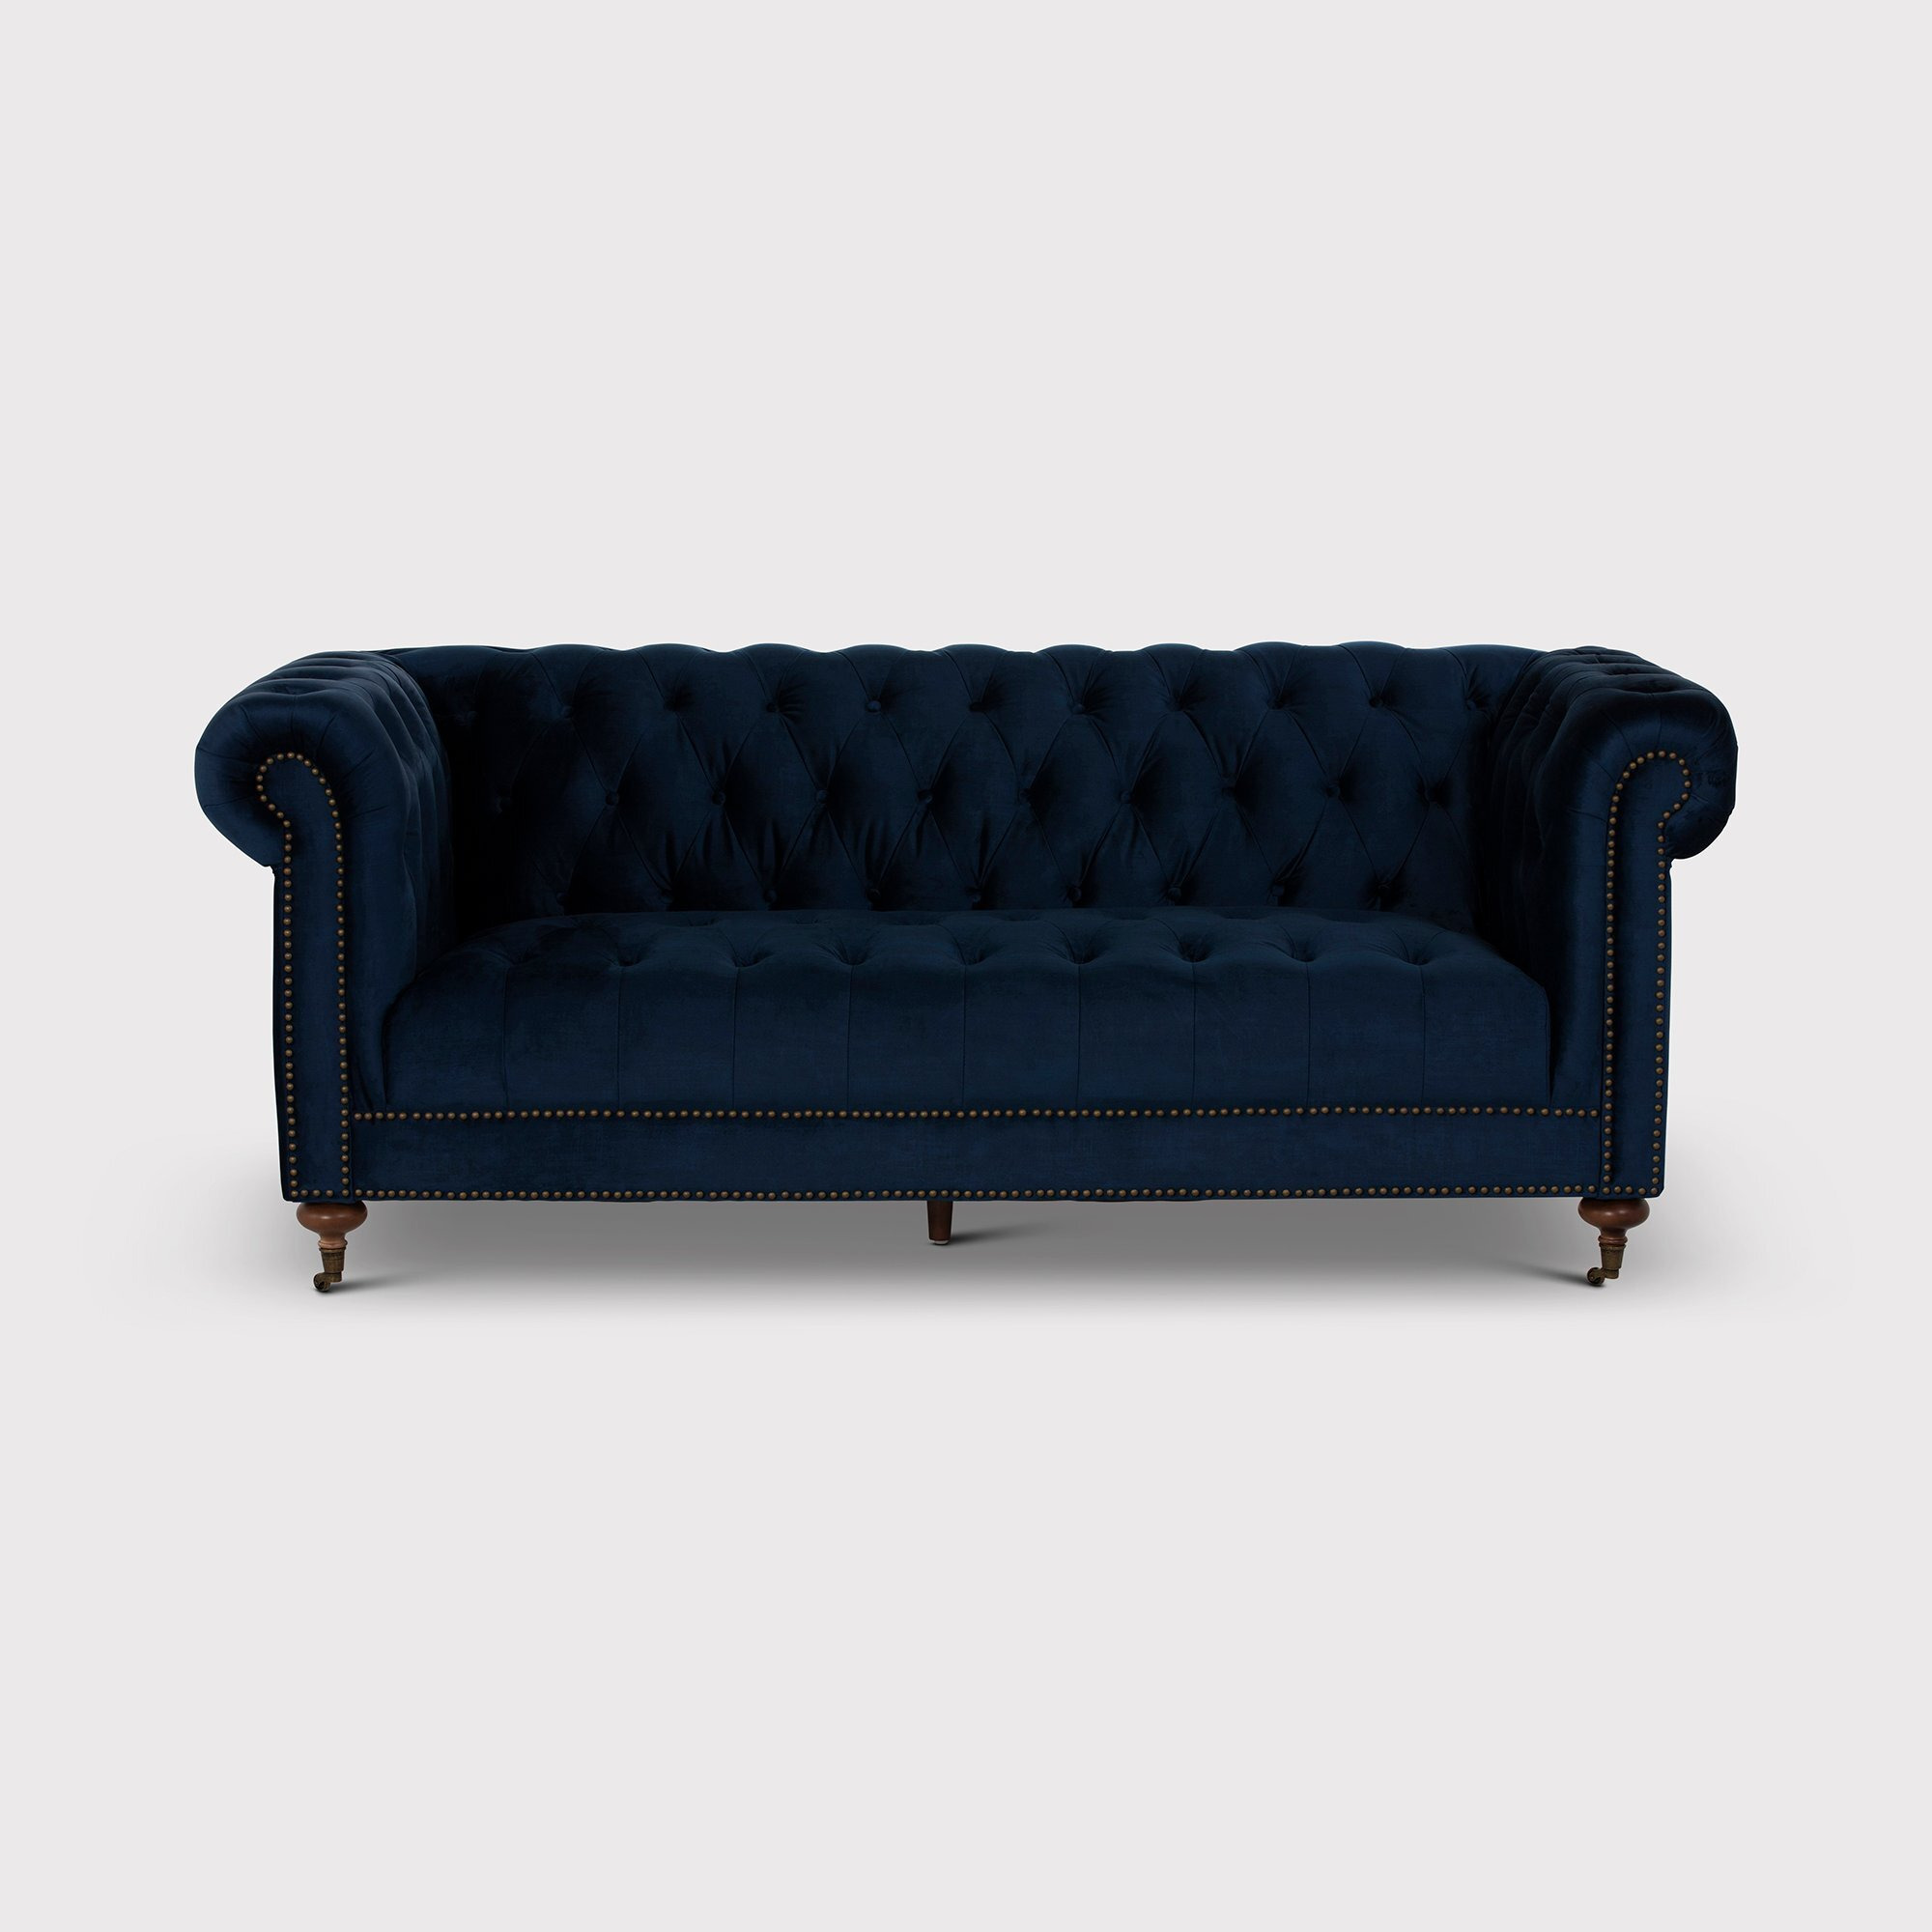 Duchamp 3.5 Seater Chesterfield Sofa, Blue Velvet - Barker & Stonehouse - image 1